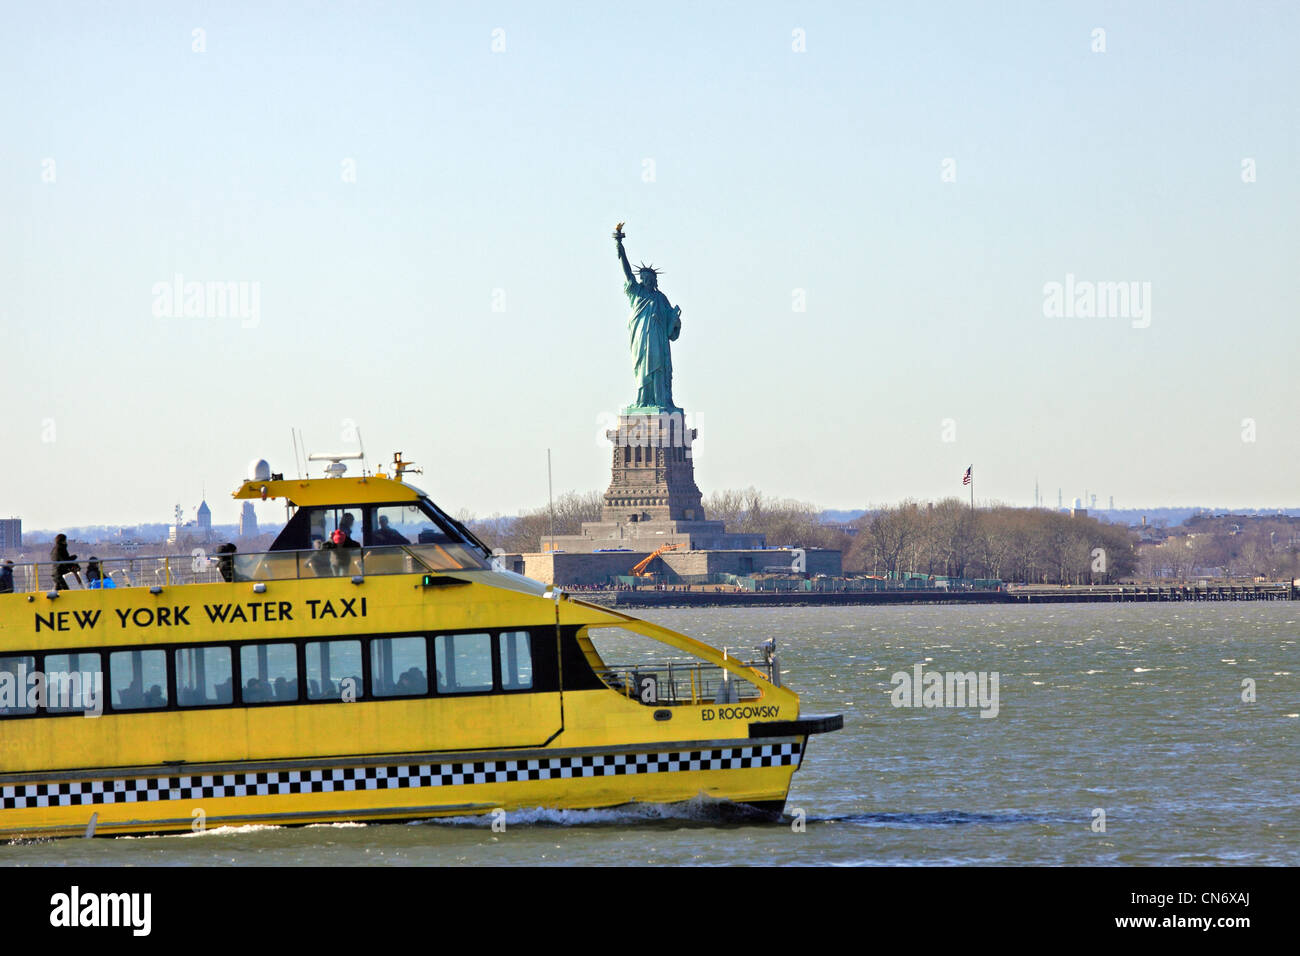 A New York Water Taxi passa davanti alla statua della libertà nel porto di New York Foto Stock